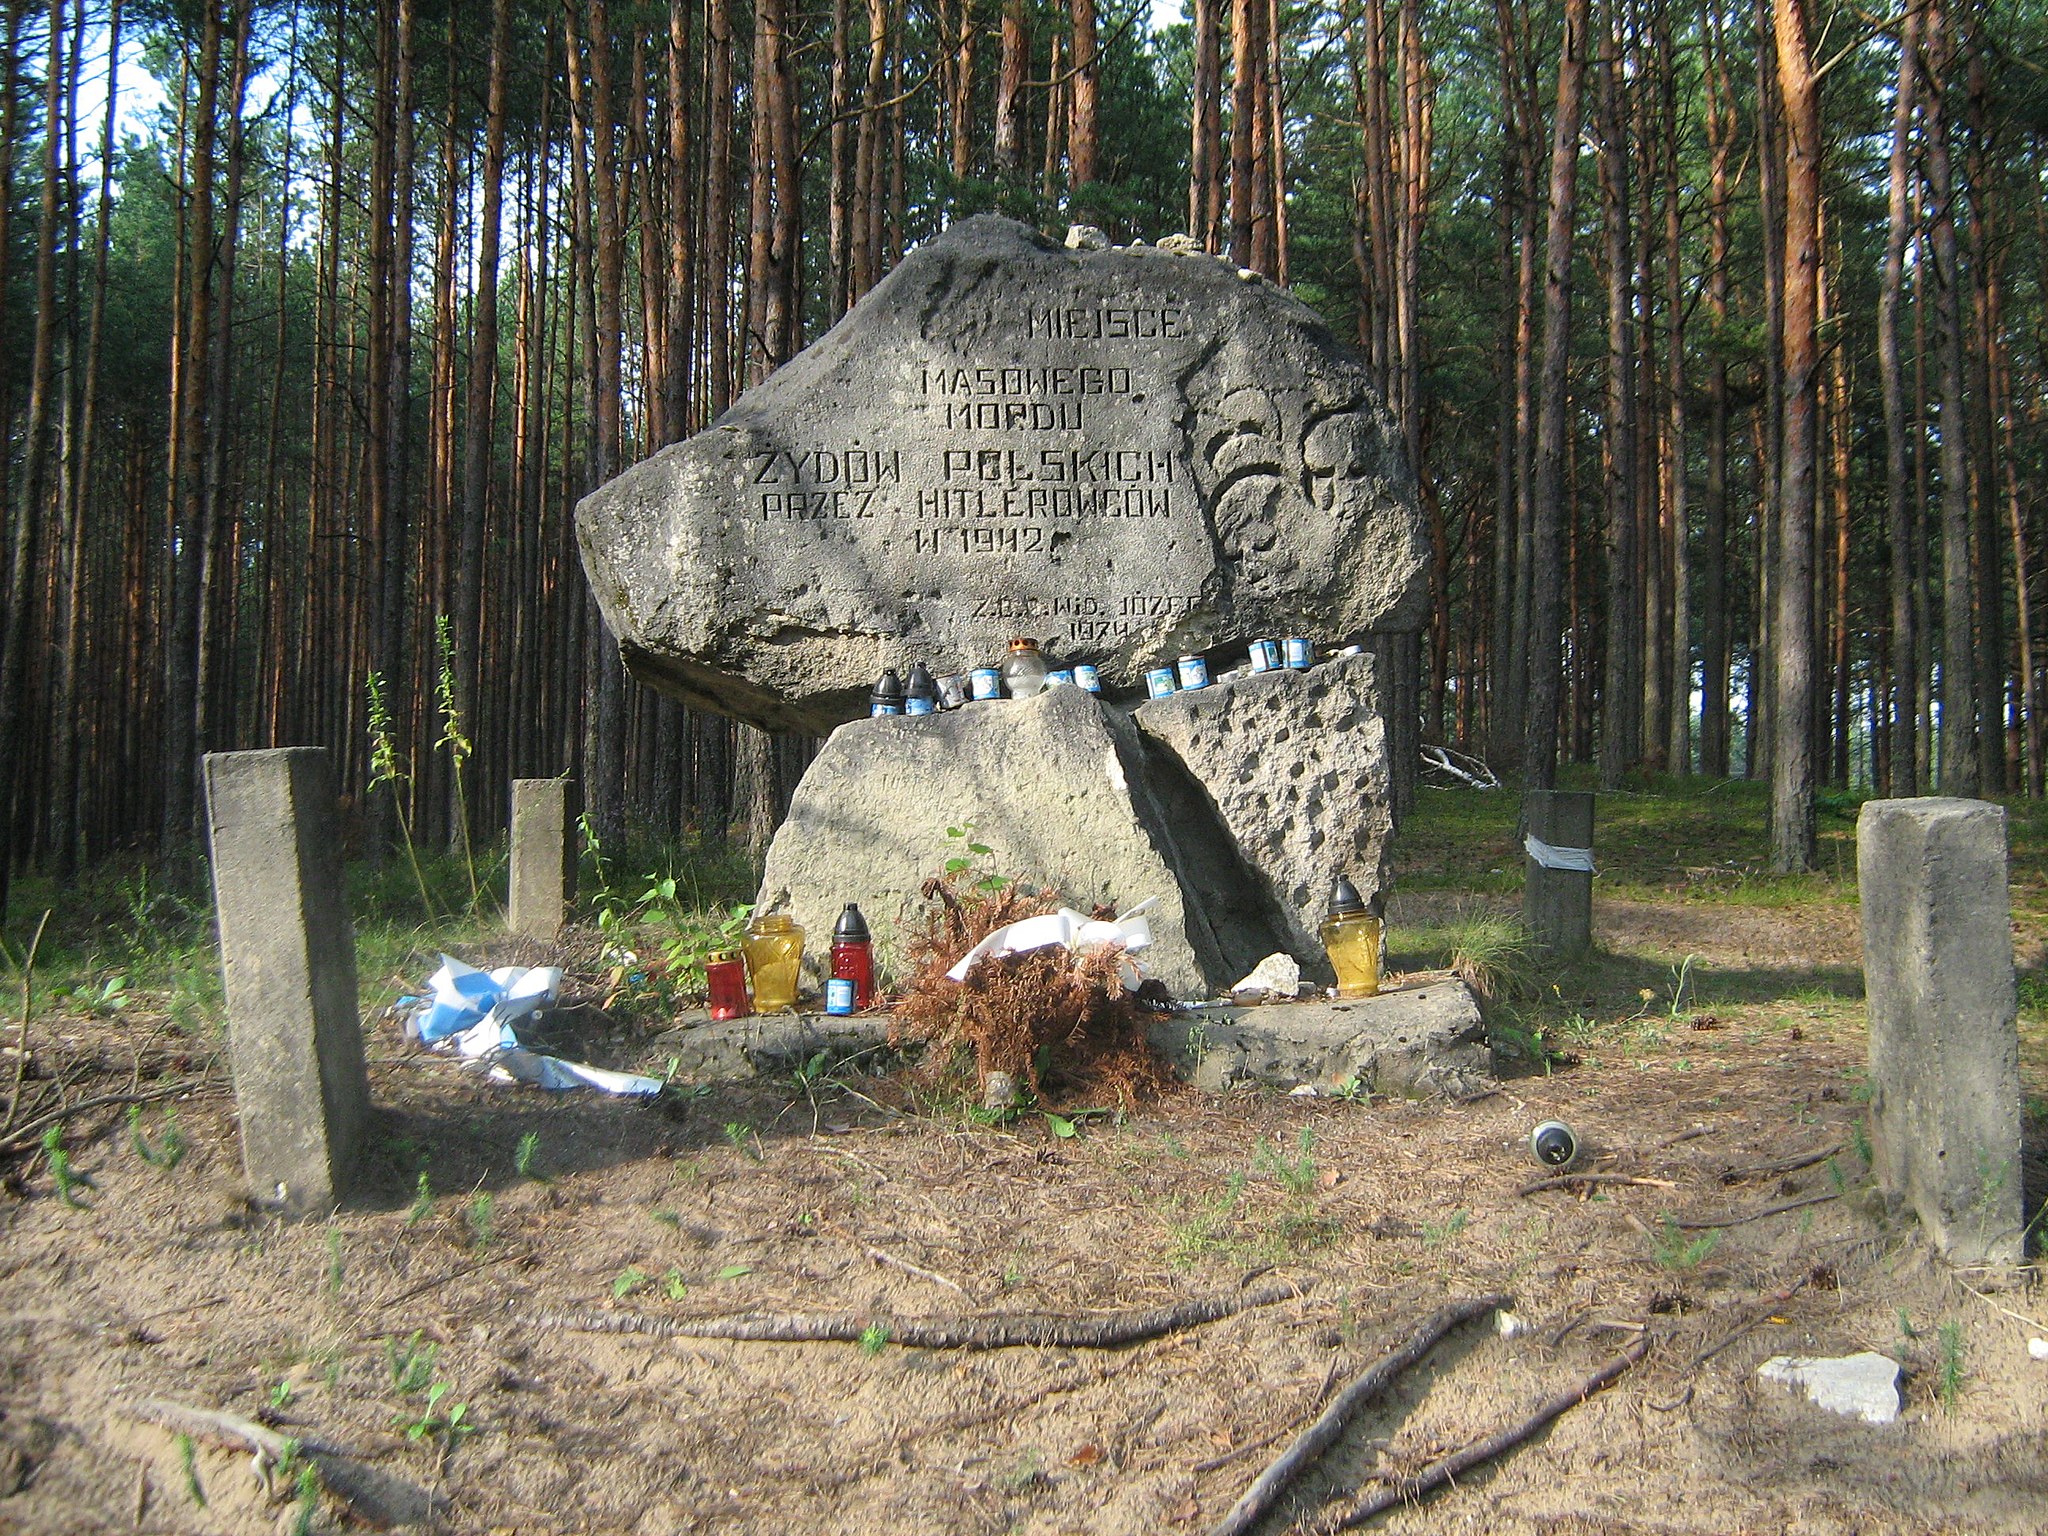 Monumento em Józefów erguido em 1974 para comemorar o massacre,em 1942, de sua população judaica pelos nazistas alemães.